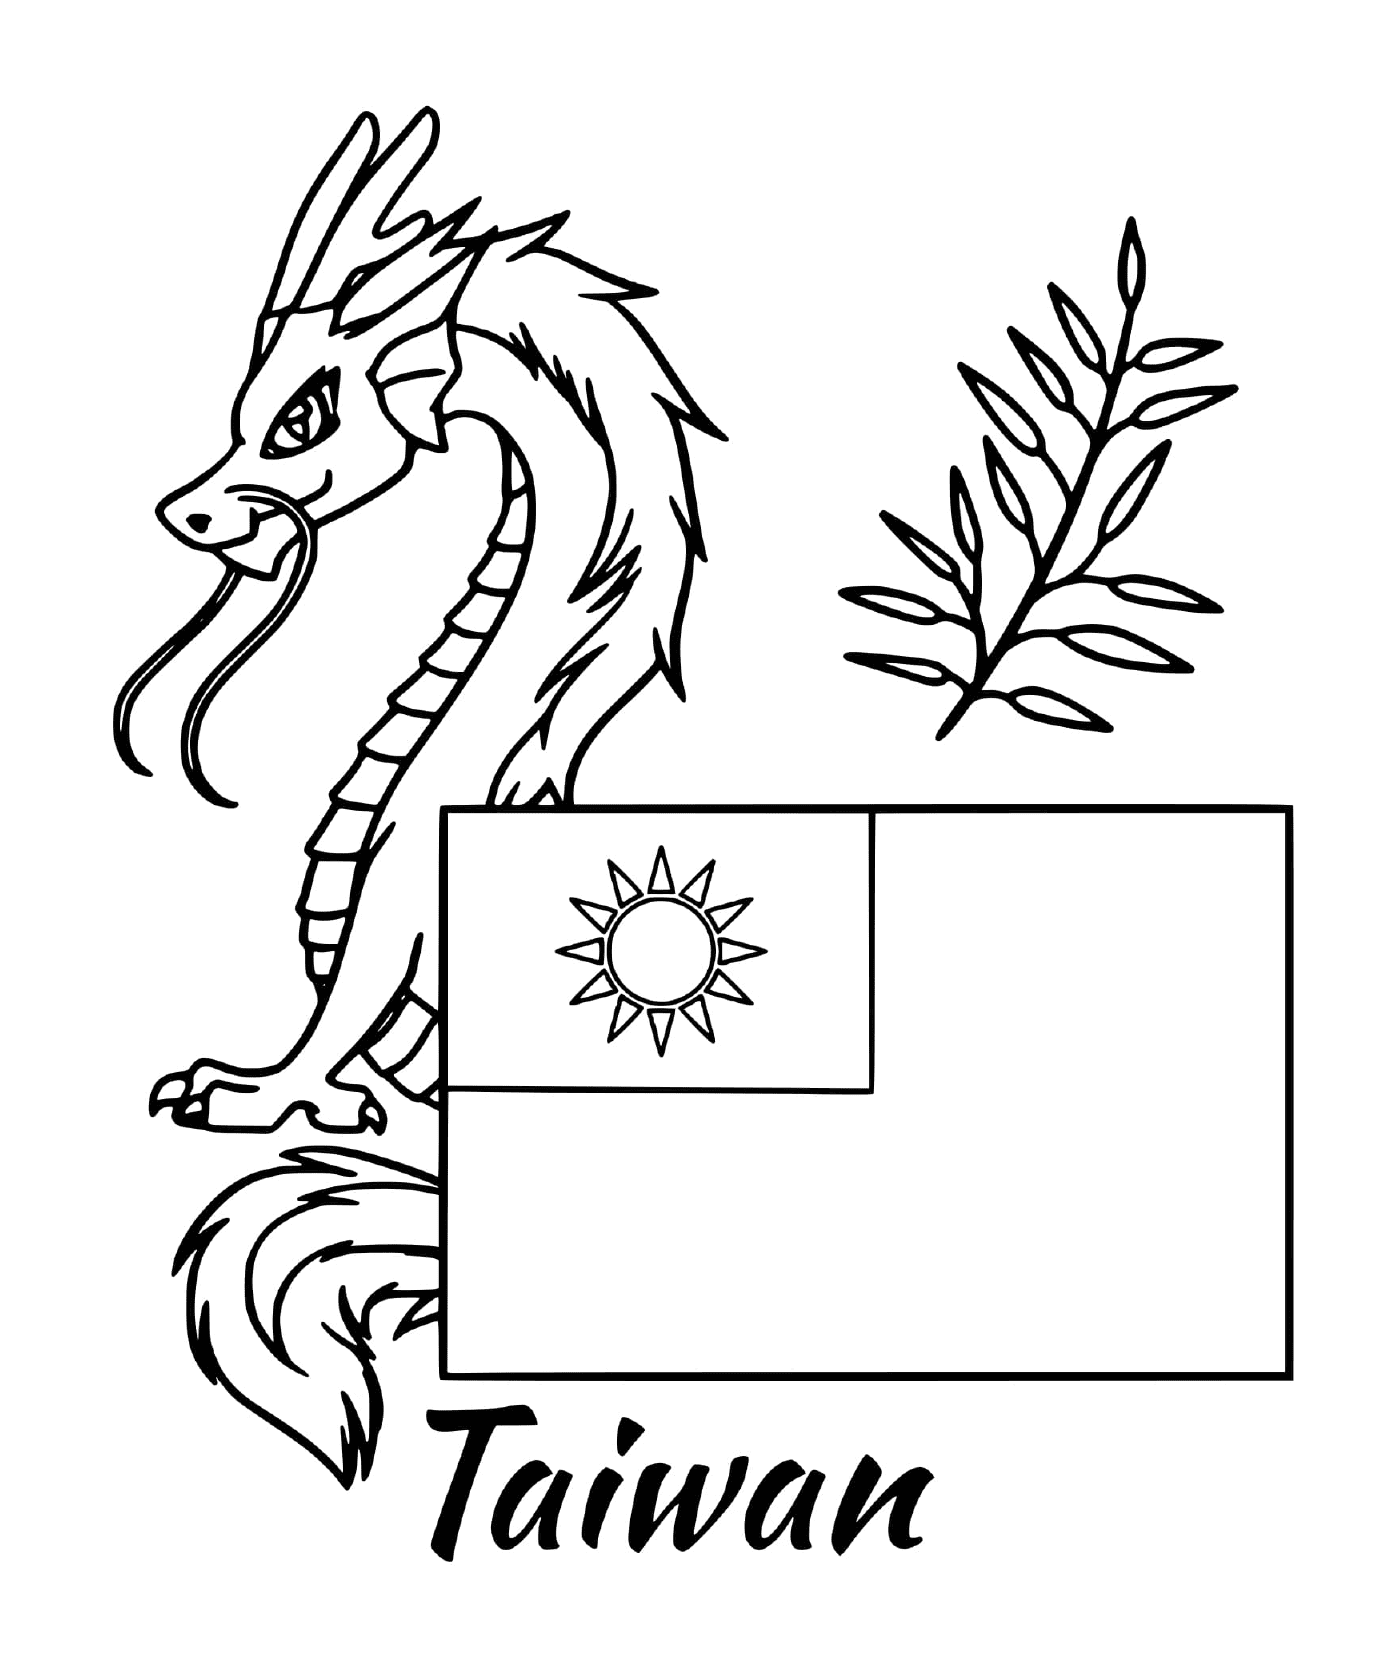  Bandiera Taiwan con drago 